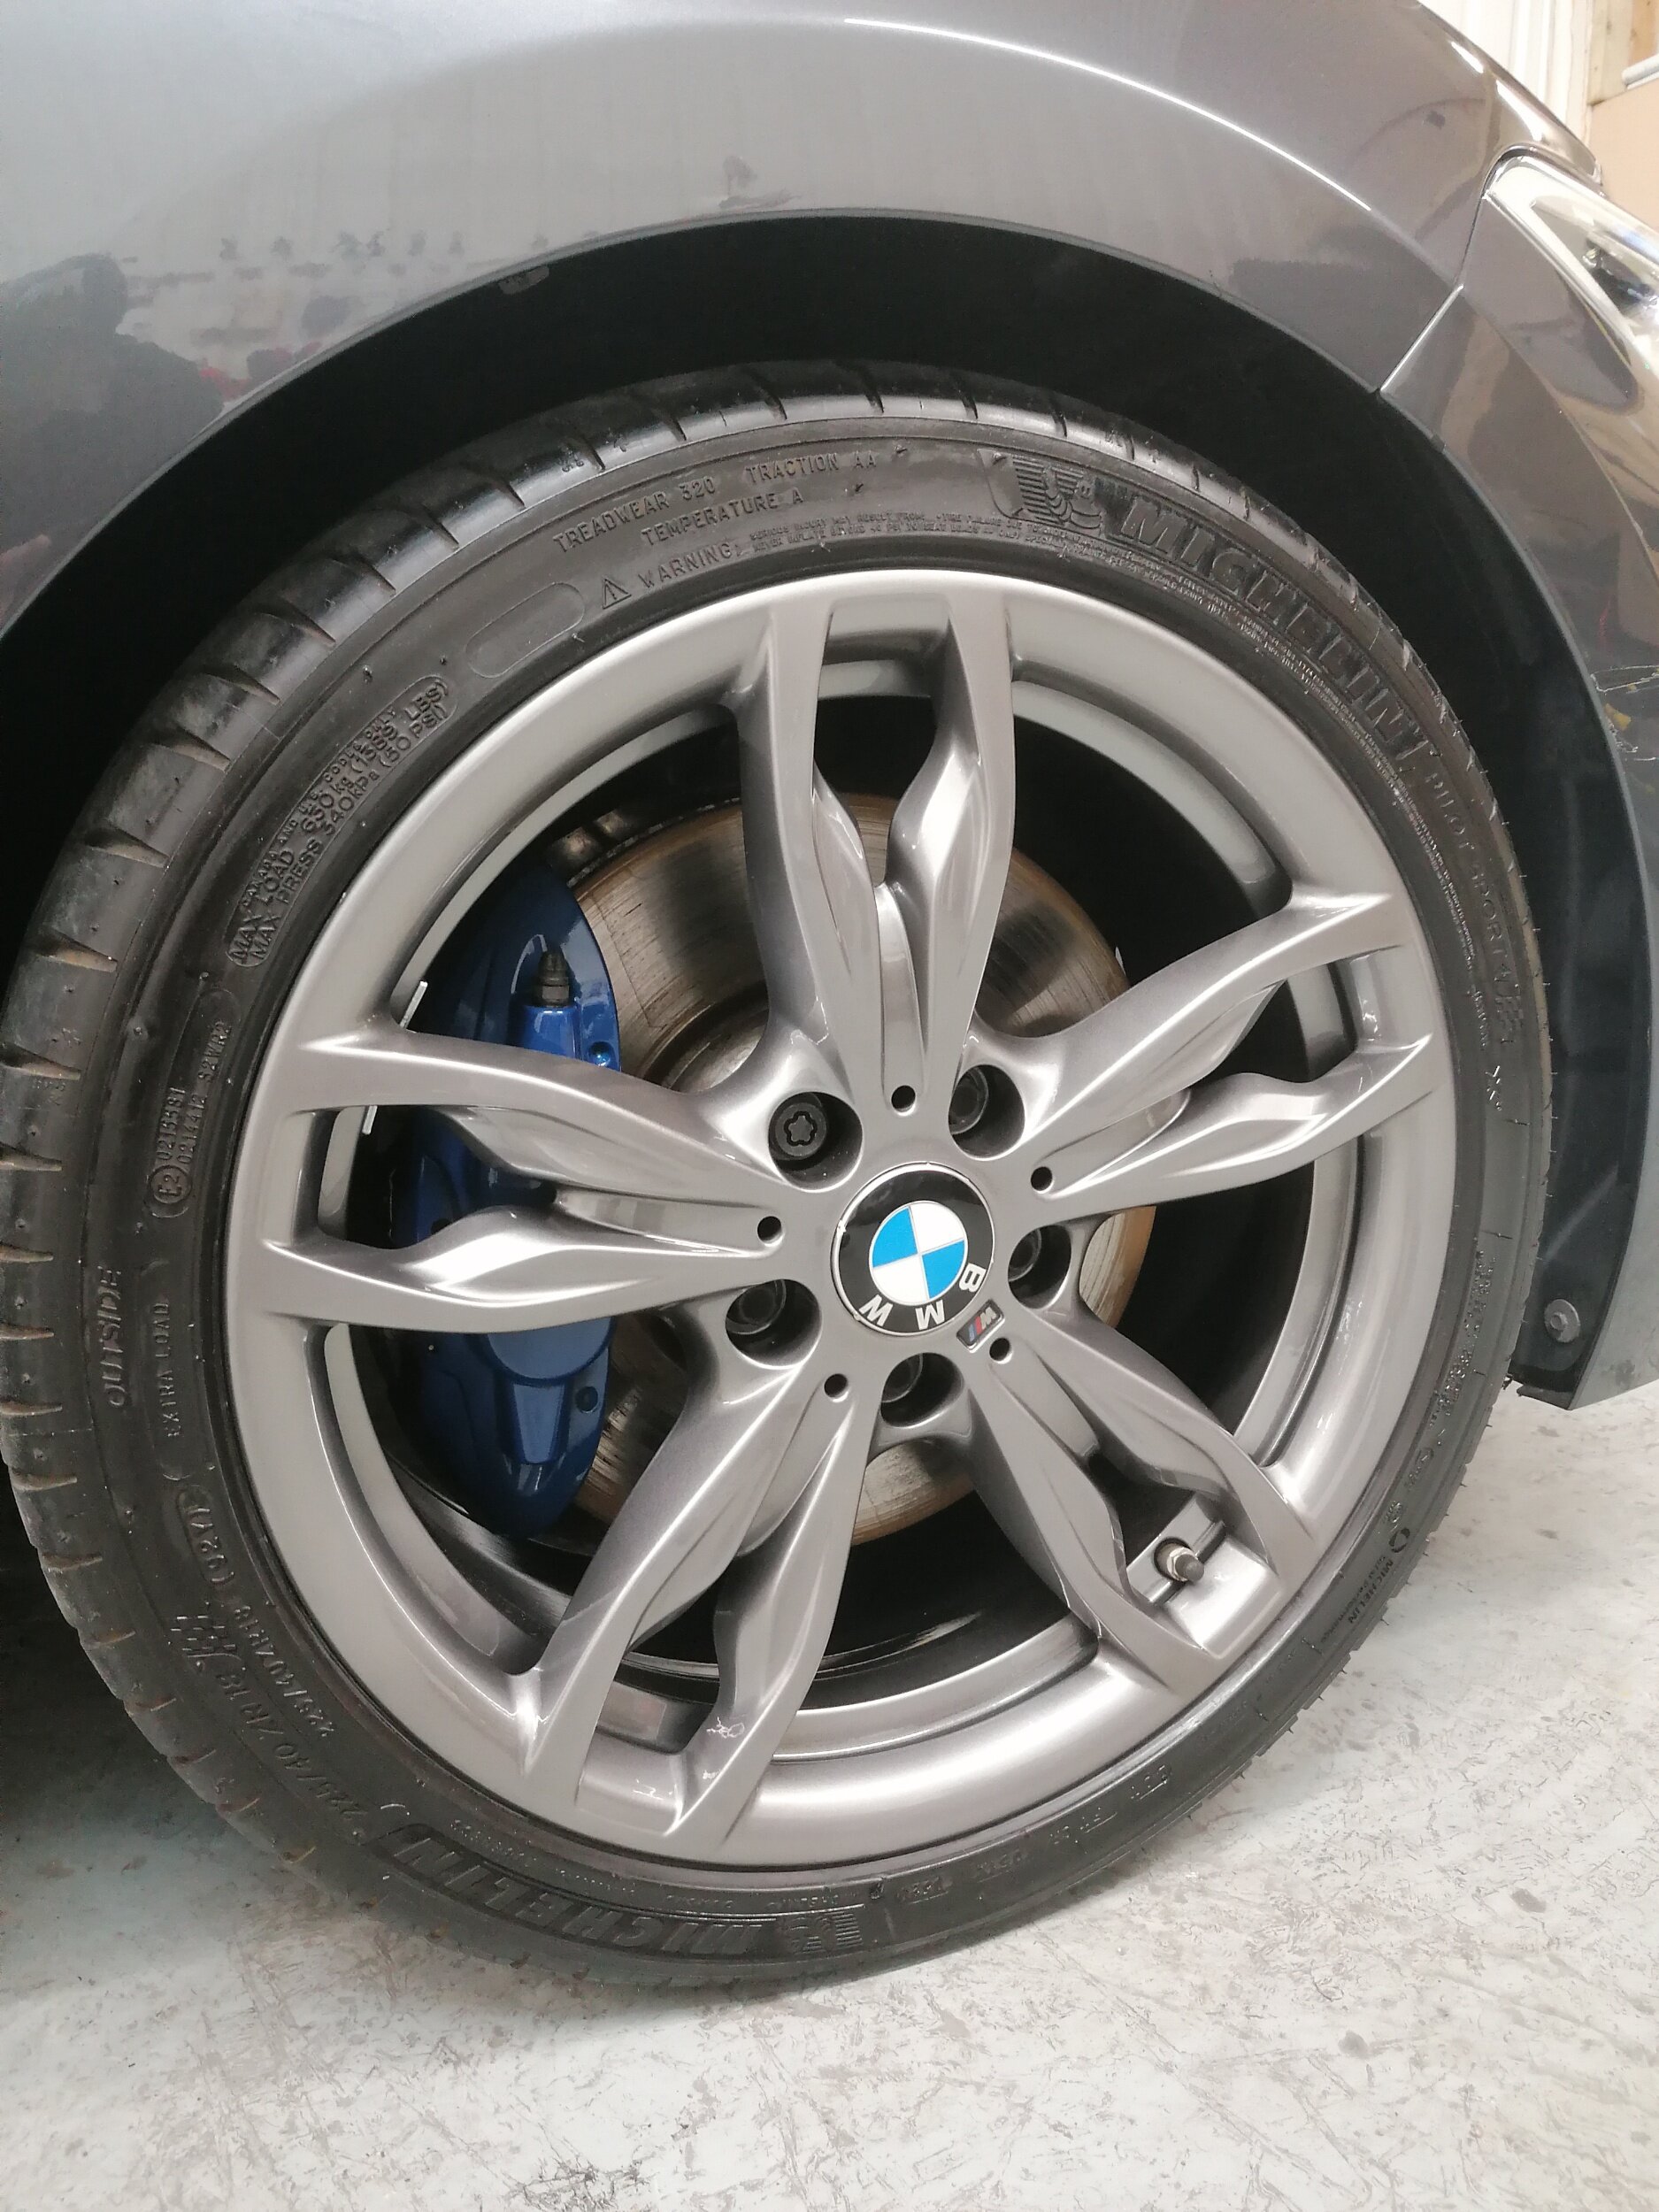 BMW M3 DIAMOND CUT ALLOY WHEEL REFURBISHMENT SERVICE IN LONDON E2